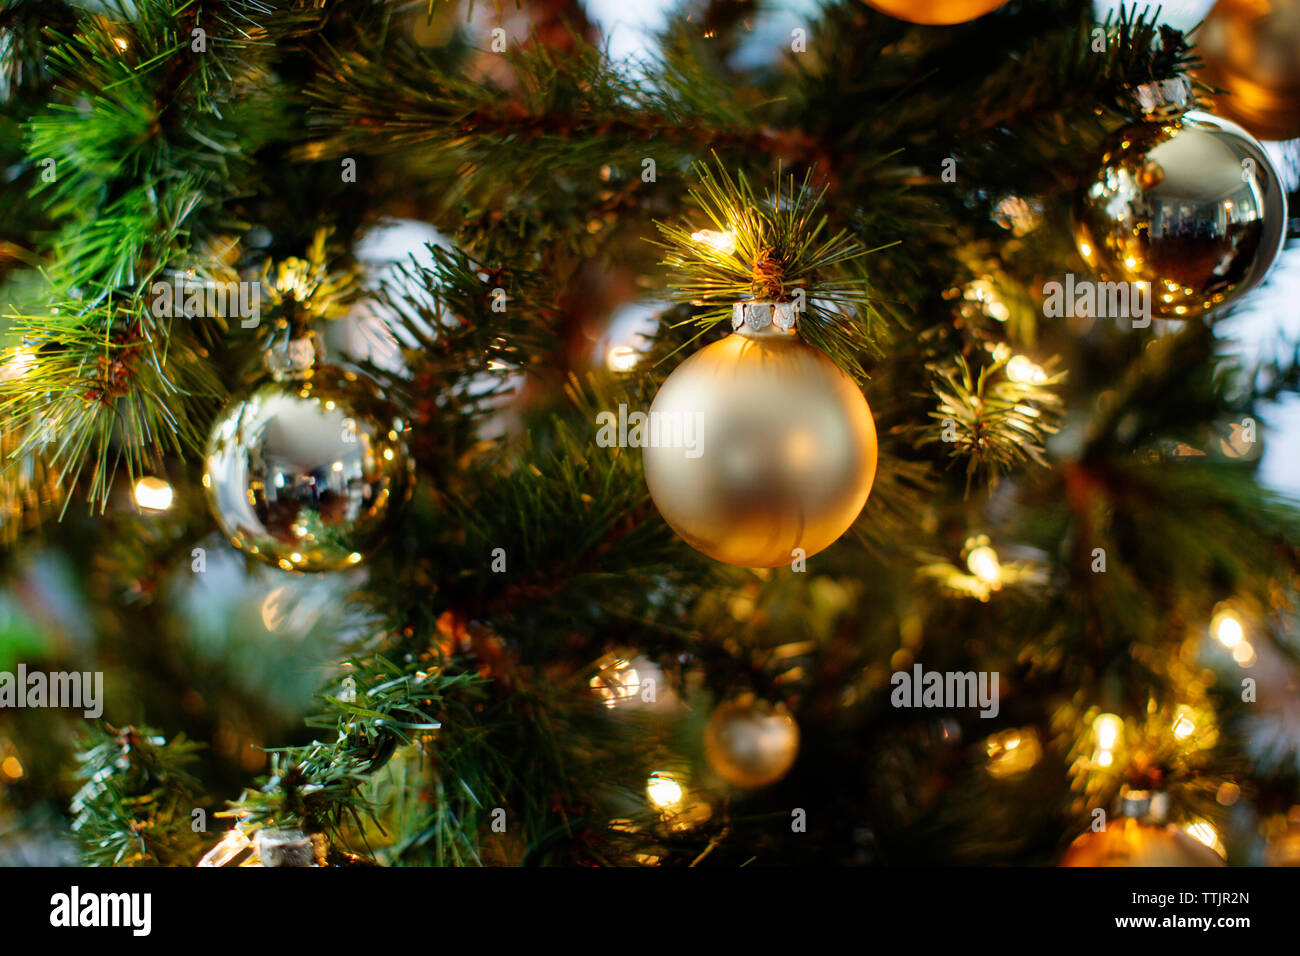 Cerca de los adornos y las luces del árbol de Navidad Foto de stock